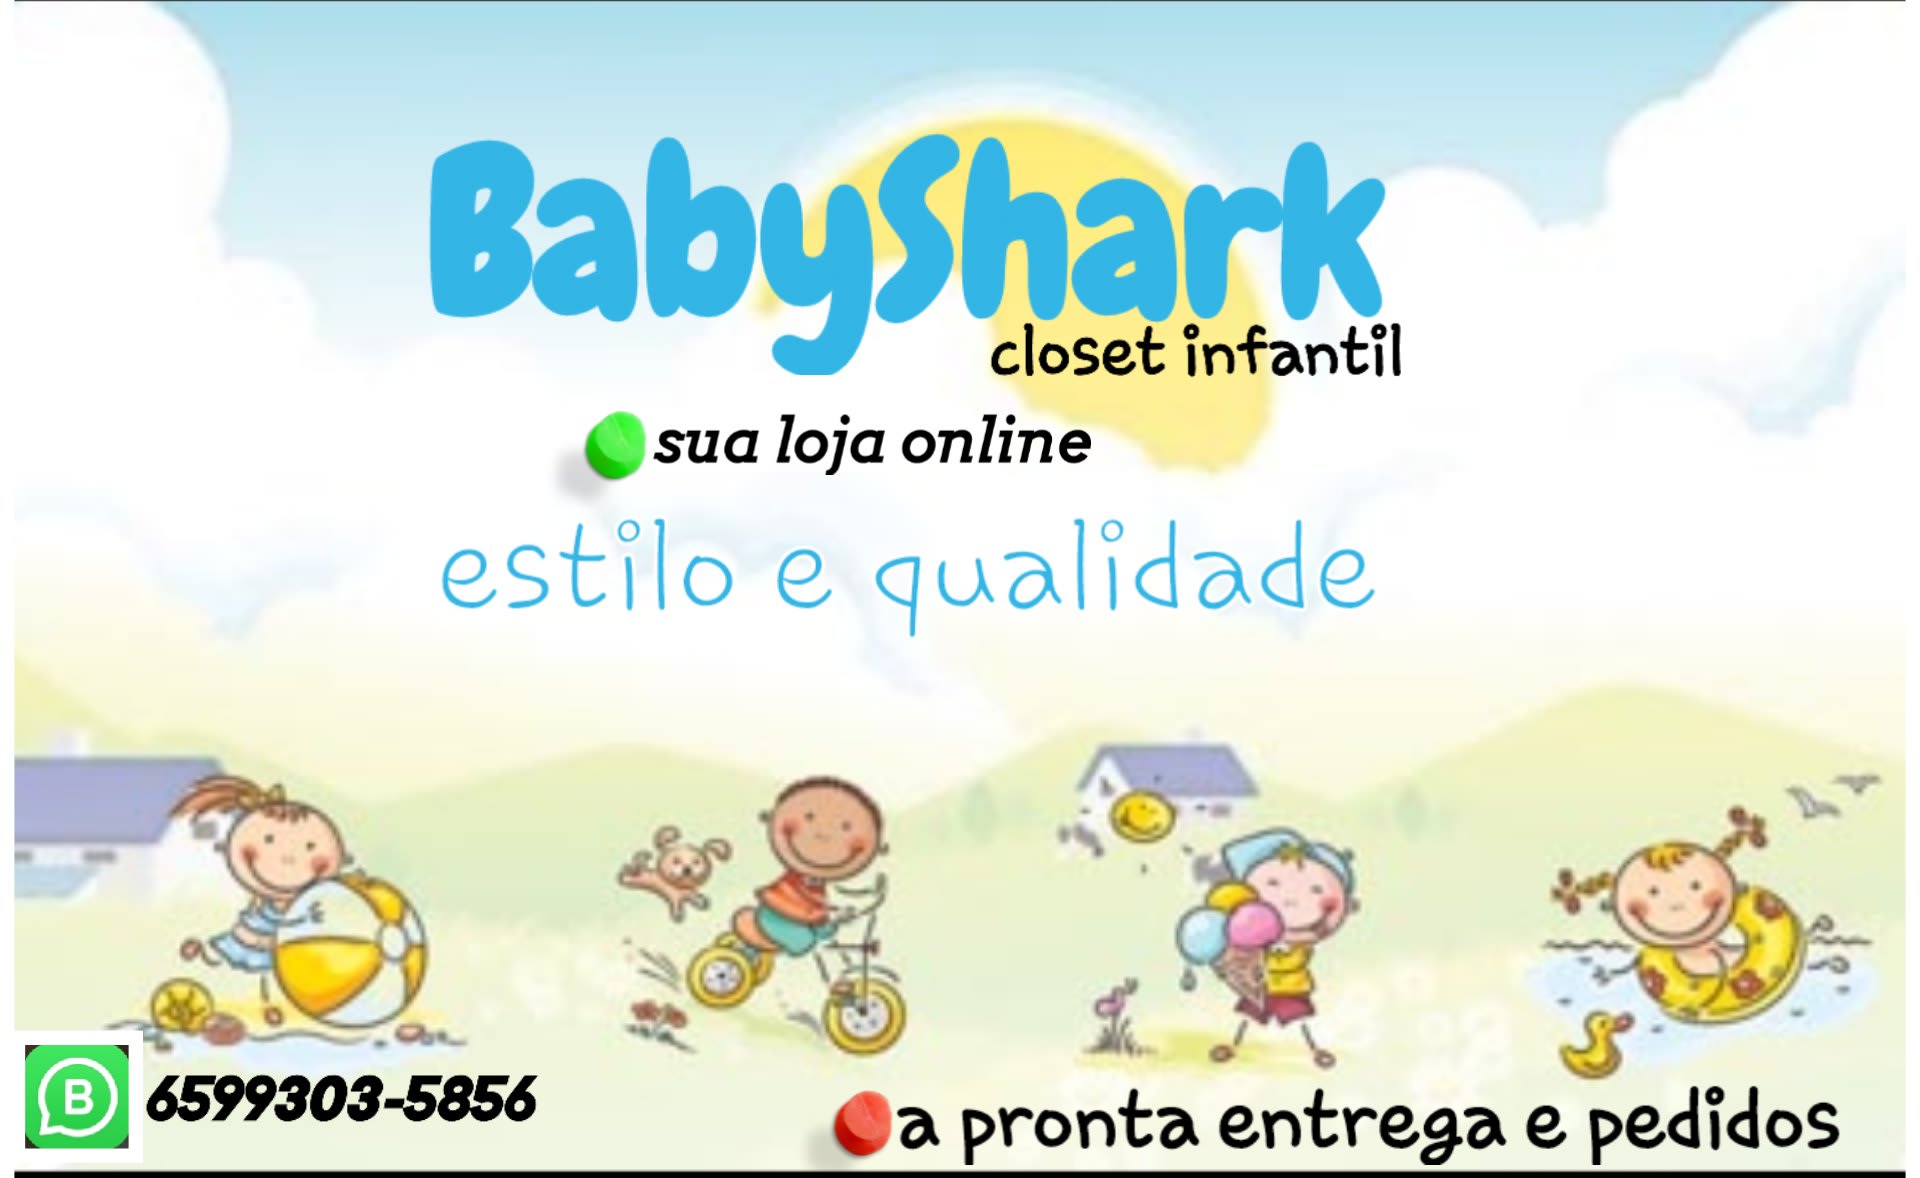 Babyshark Closet Infantil